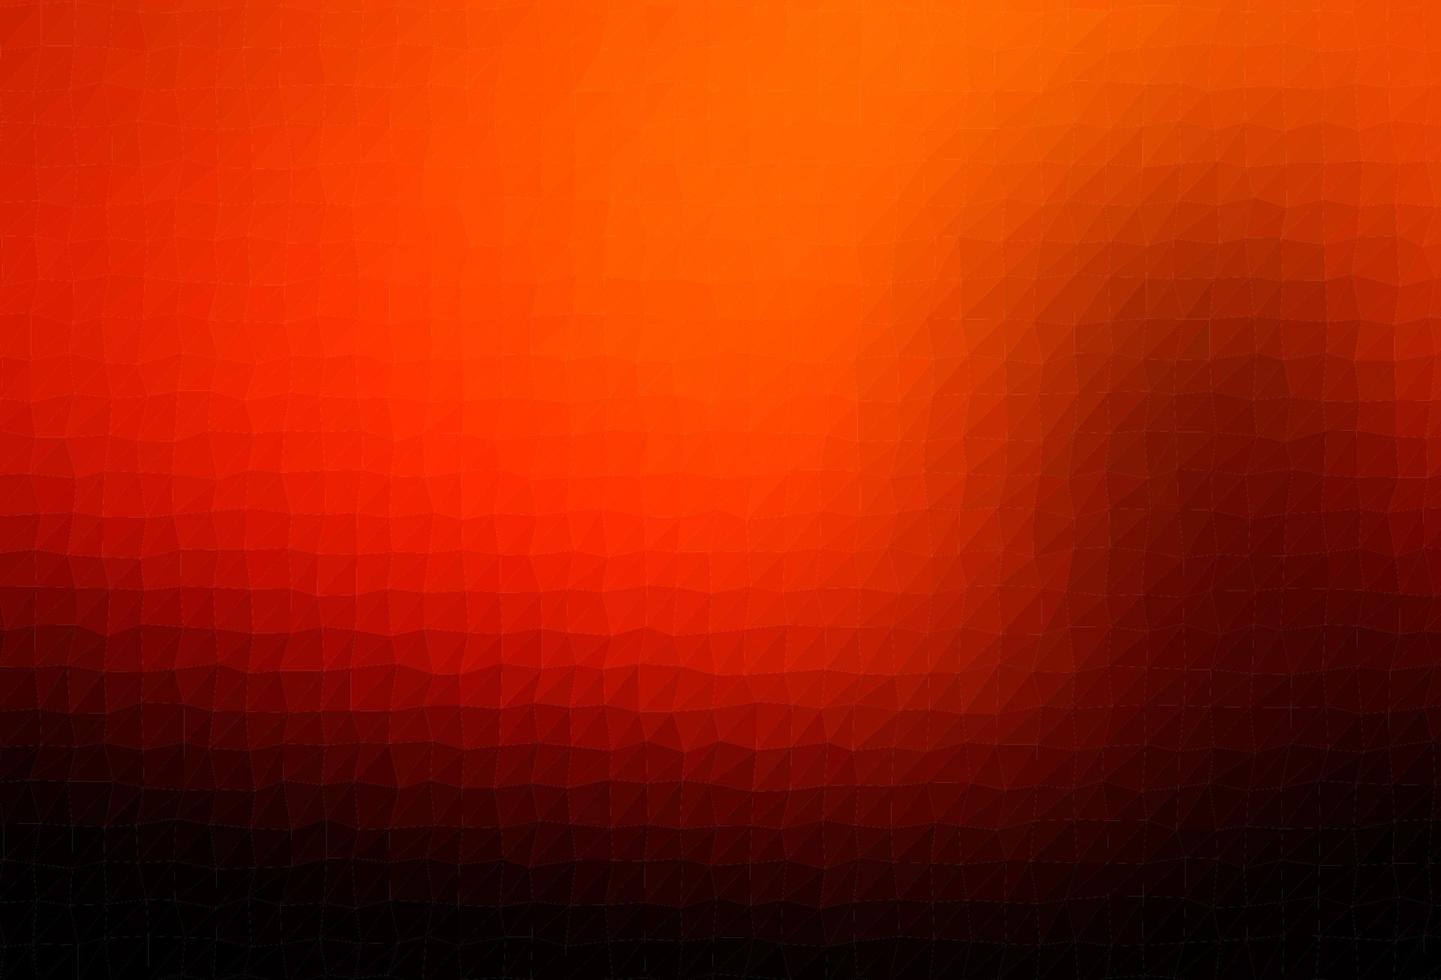 sfondo astratto poligono vettoriale arancione scuro.